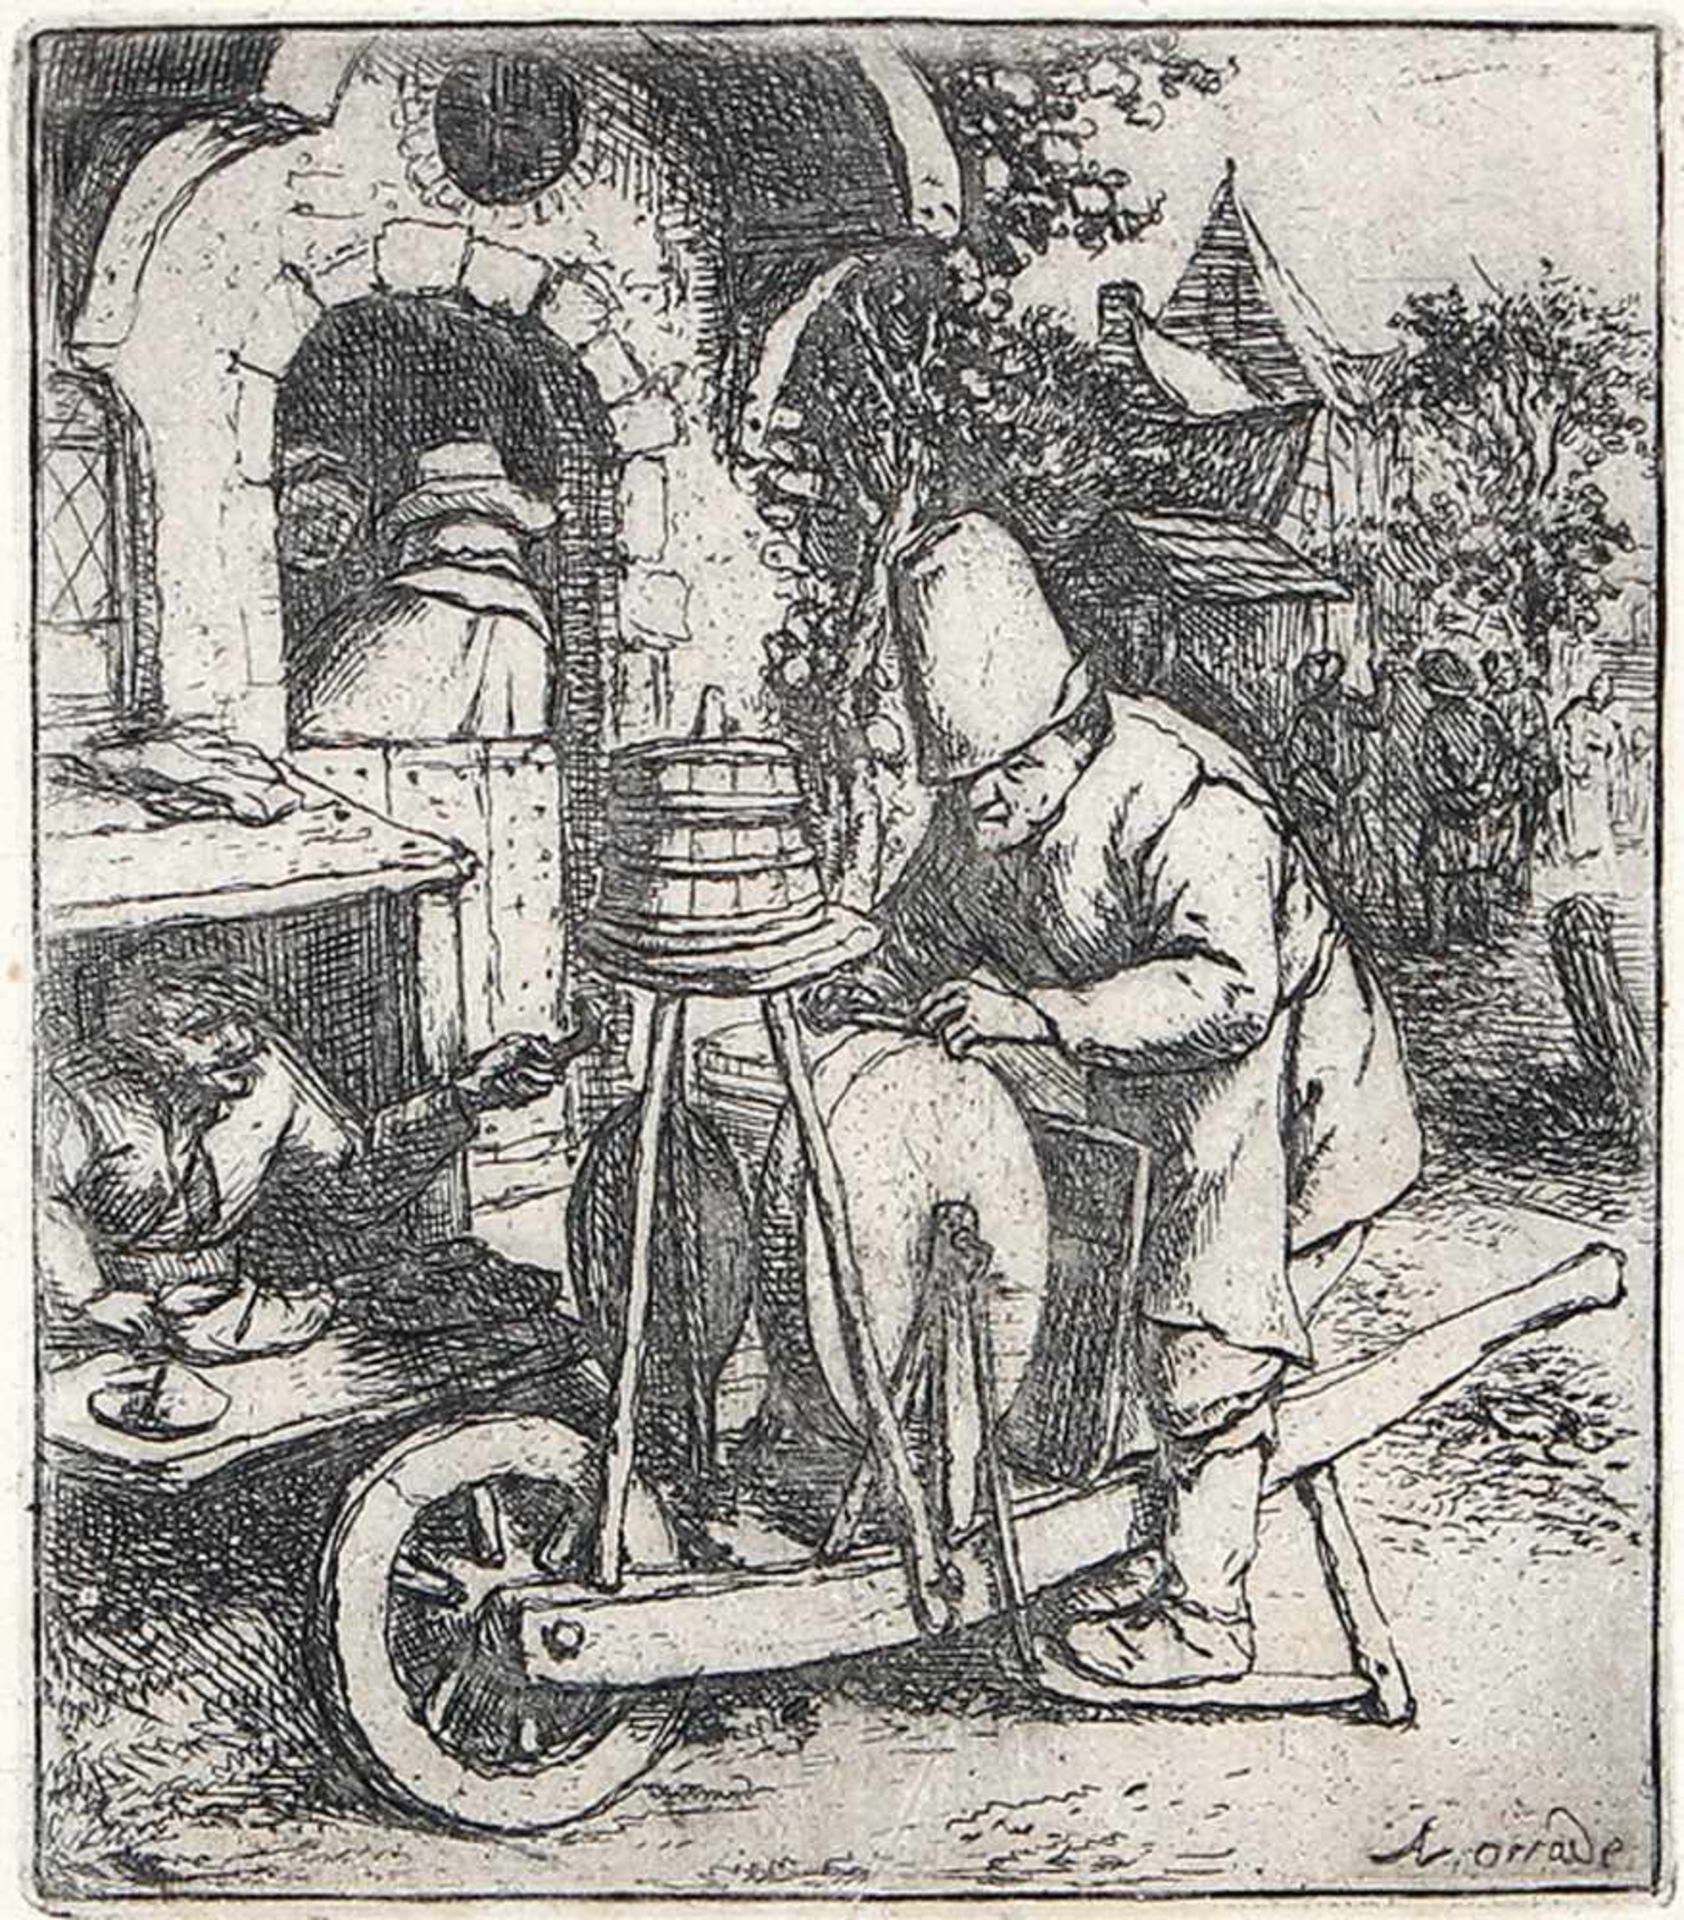 ADRIAEN VAN OSTADE 1610 - Haarlem - 1684Der Scherenschleifer. Radierung um 1682. Bartsch 36,